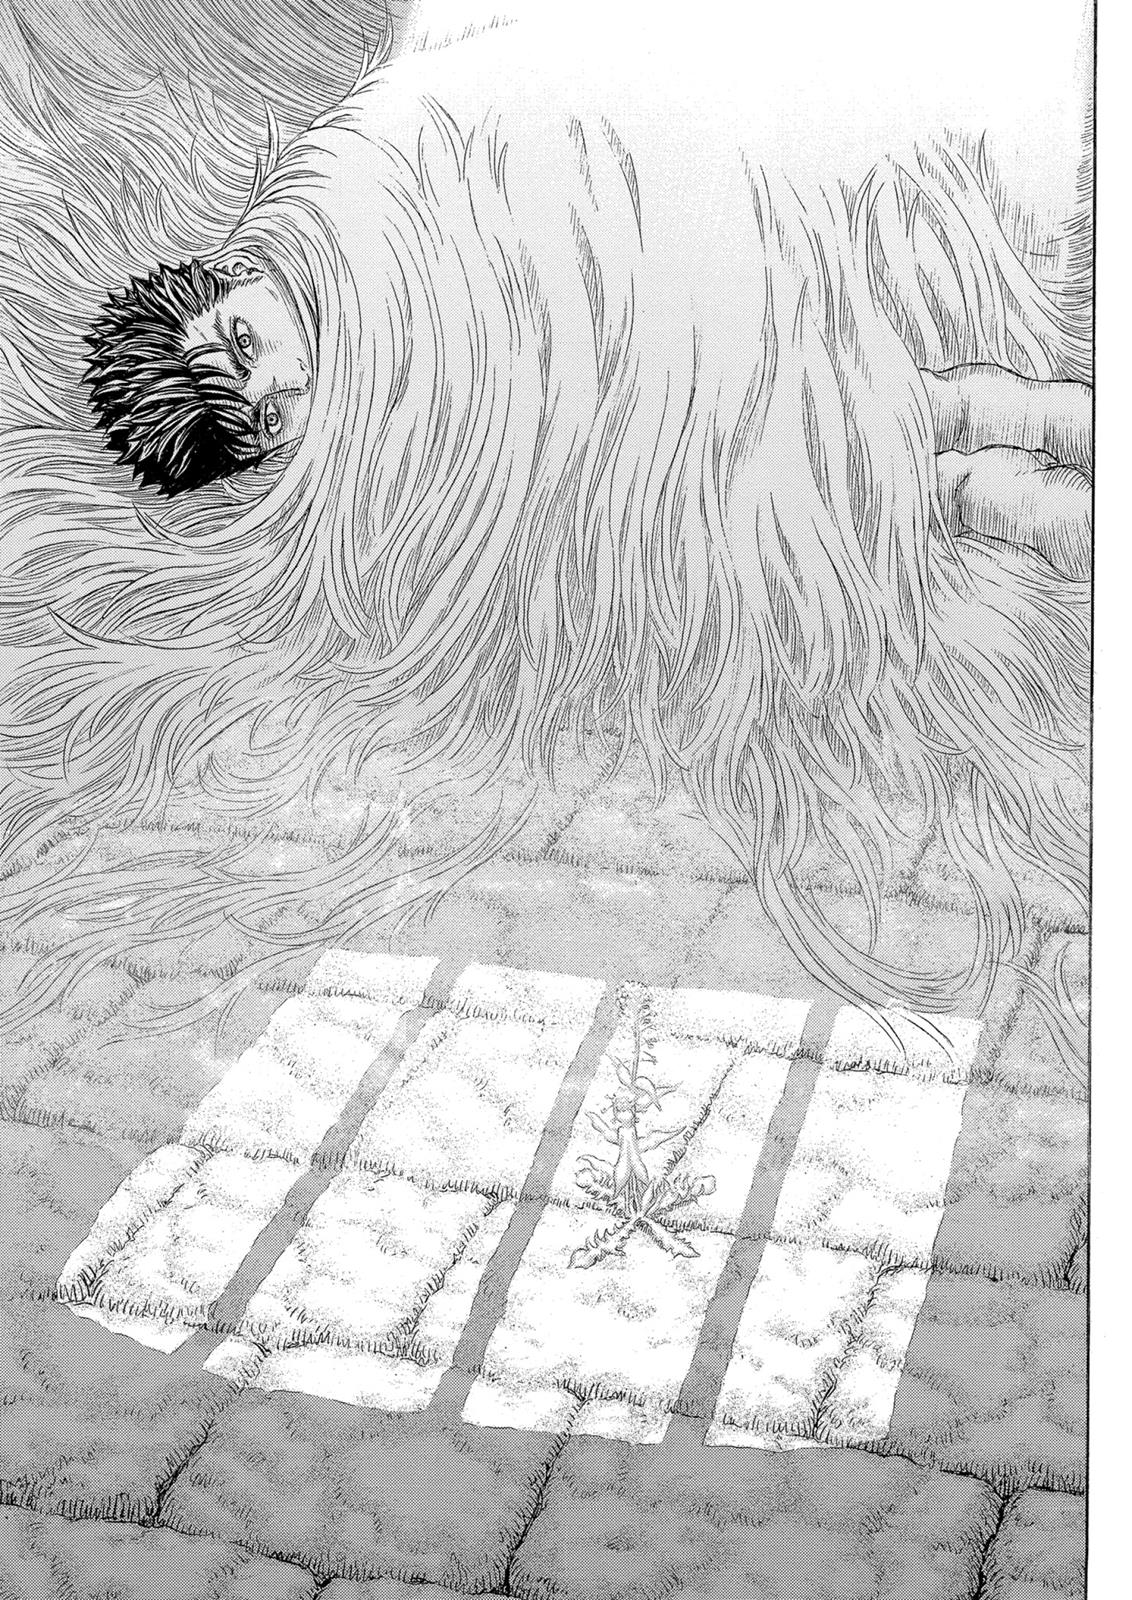 Berserk Manga Chapter 330 image 02